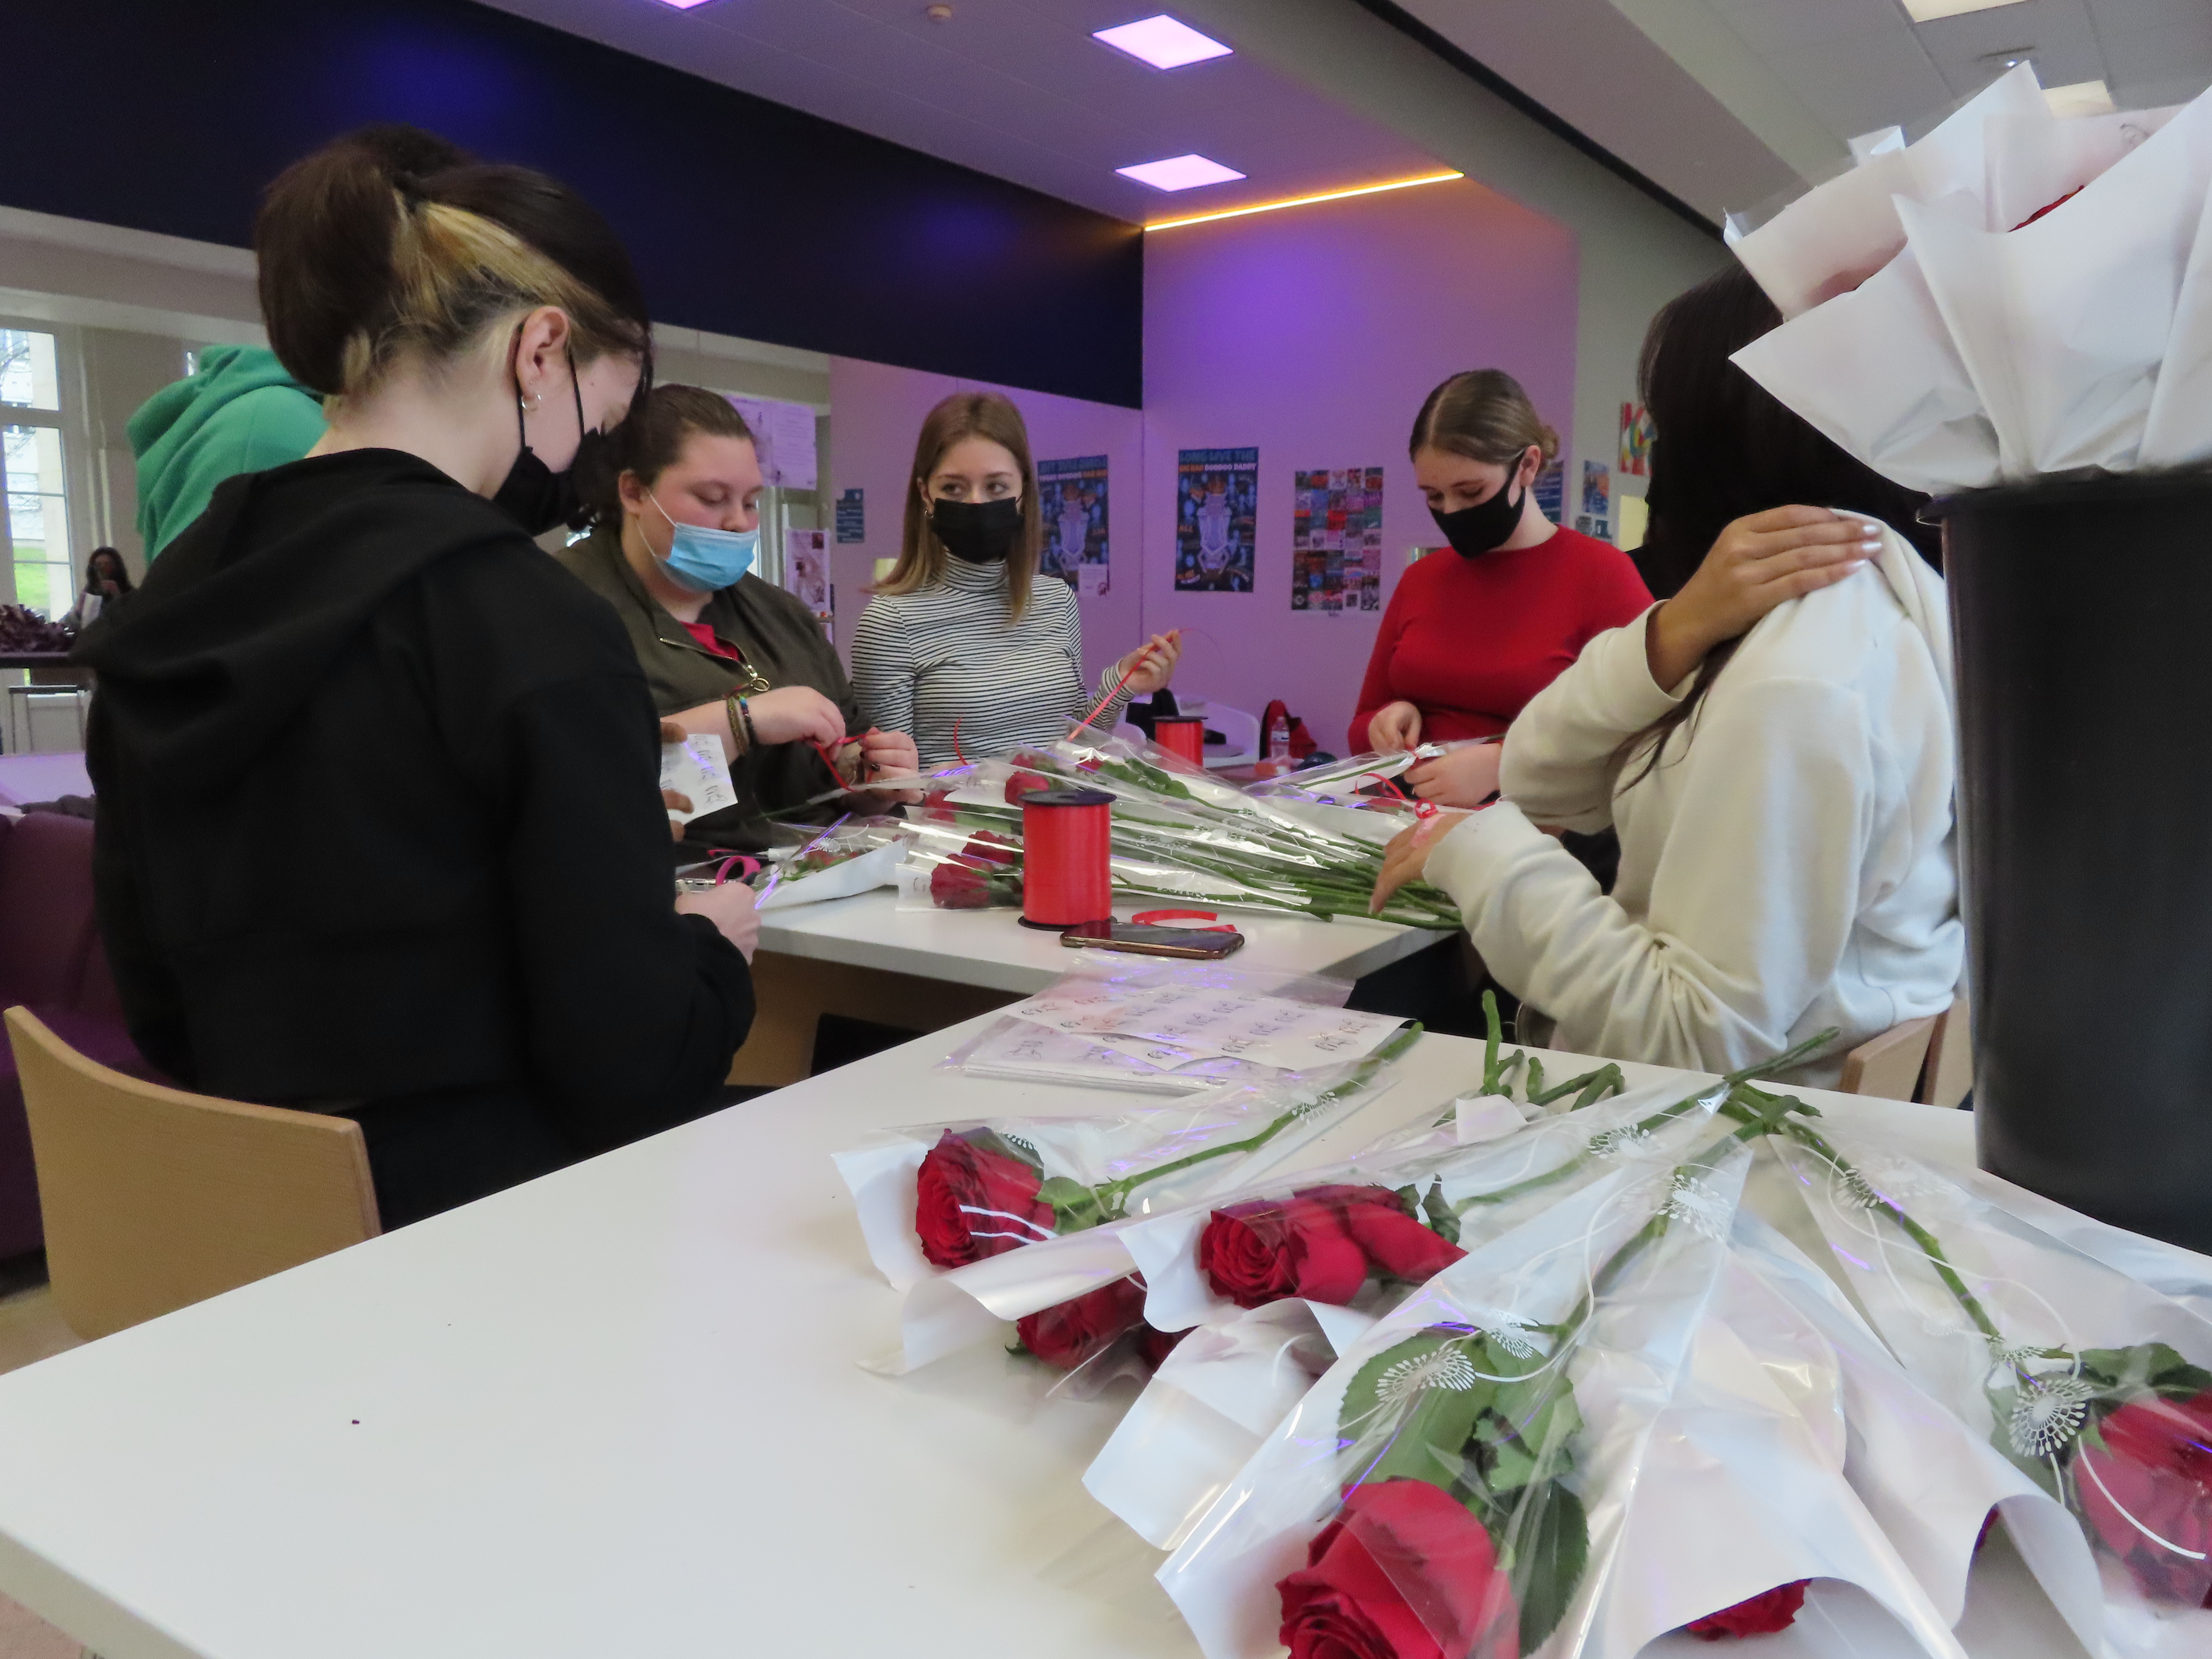 Parmi leurs actions solidaires, les élèves du lycée Jules-Uhry de Creil vont vendre des roses au profit de l'association "Pour un sourire". LP/Hervé Sénamaud